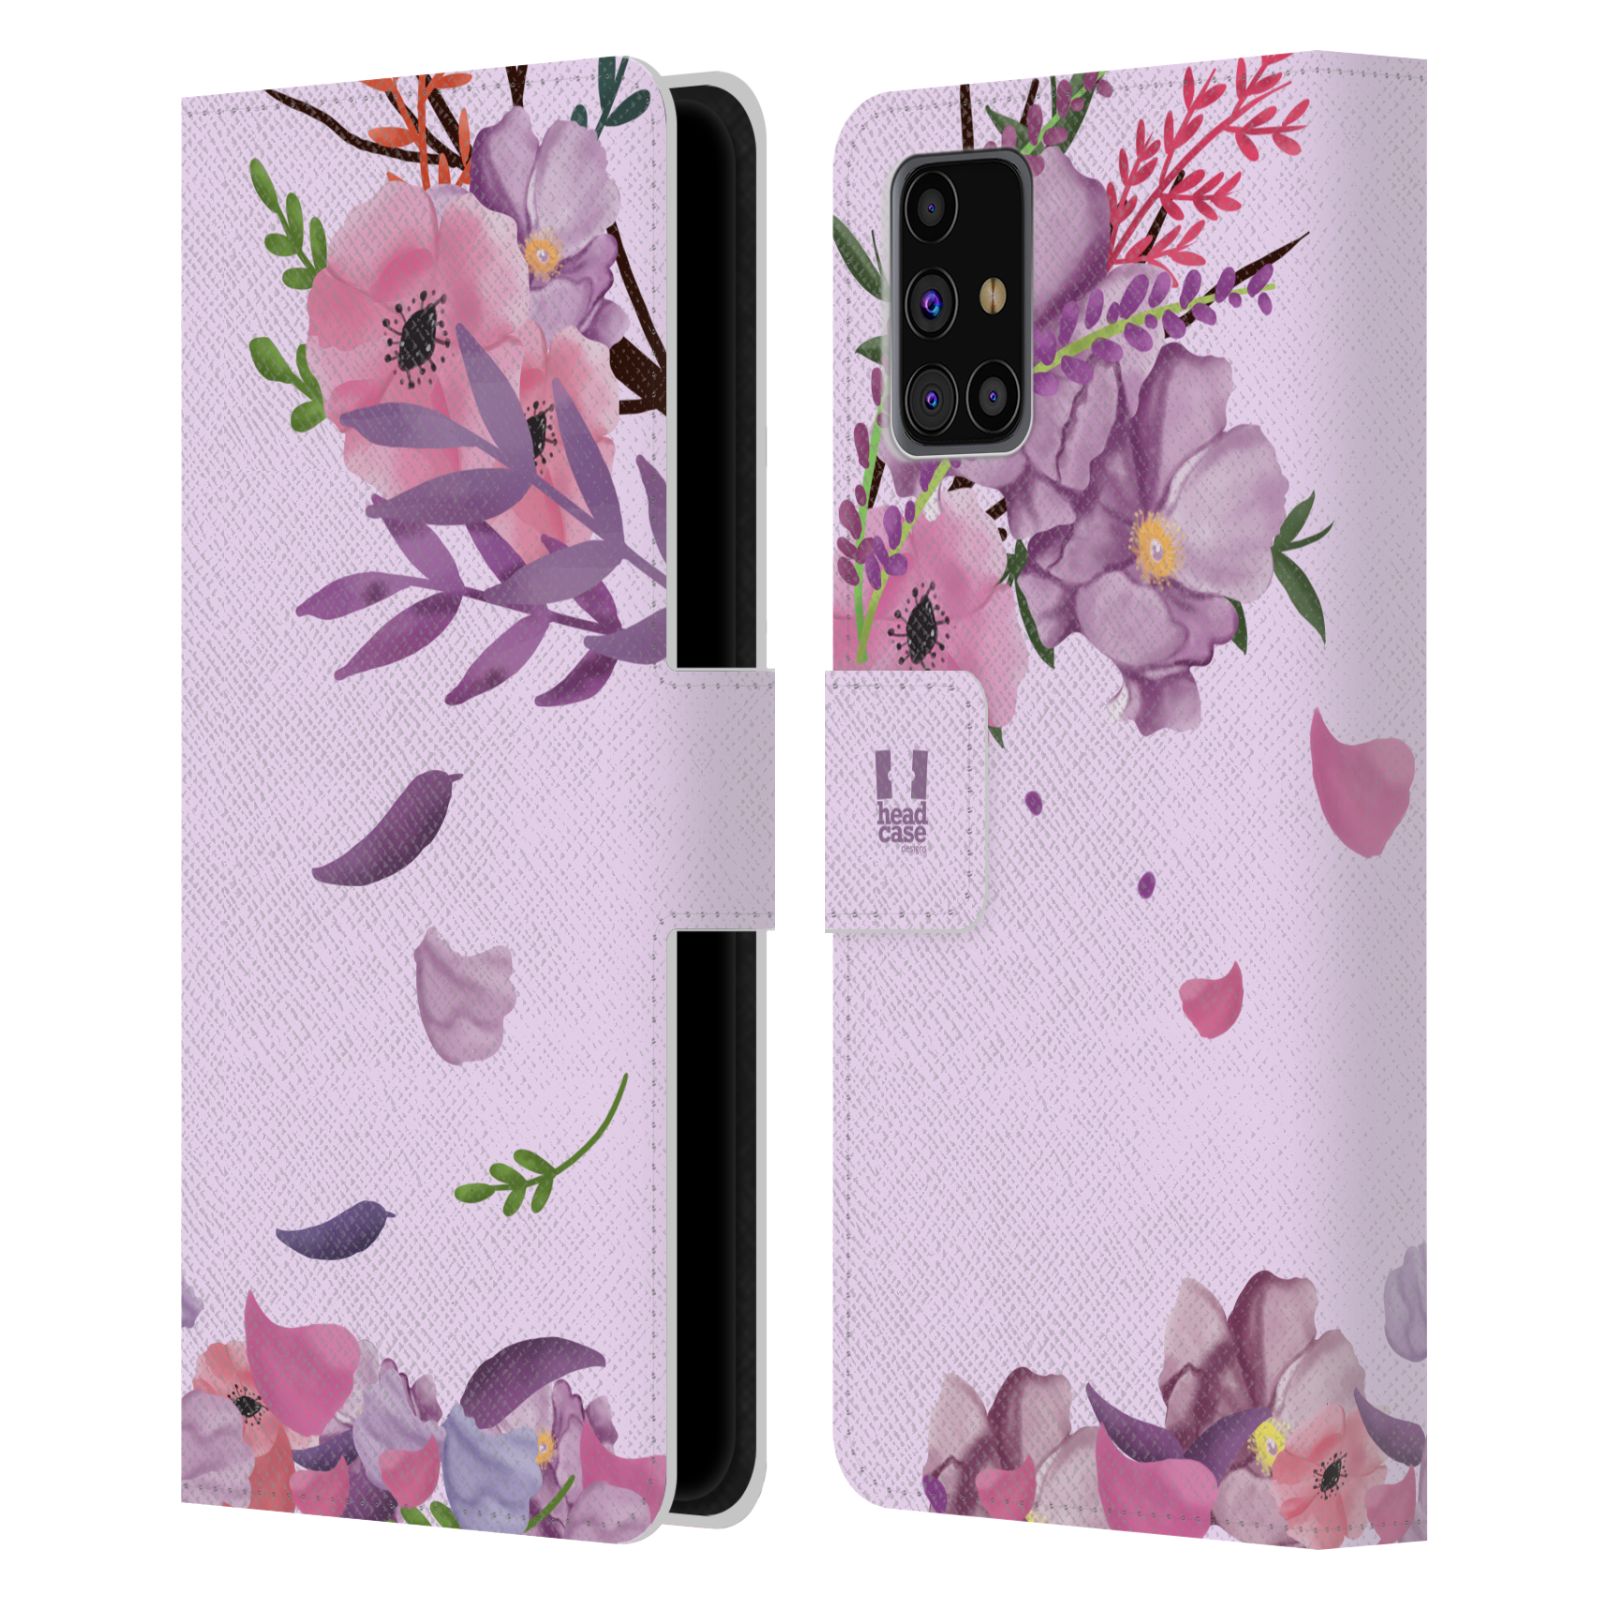 Pouzdro na mobil Samsung Galaxy M31s - HEAD CASE - Rozkvetlé růže a listy růžová